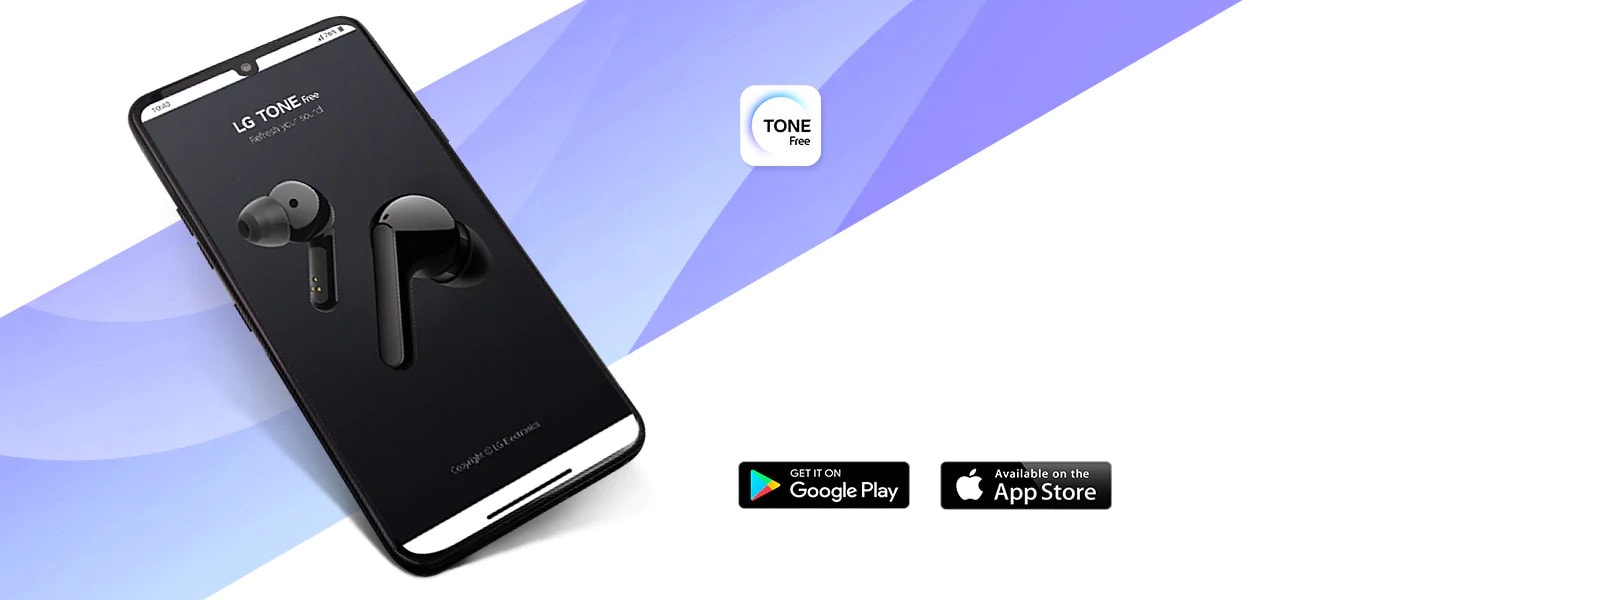 Upotpunite užitak u bubicama slušalicama TONE Free uz aplikaciju!